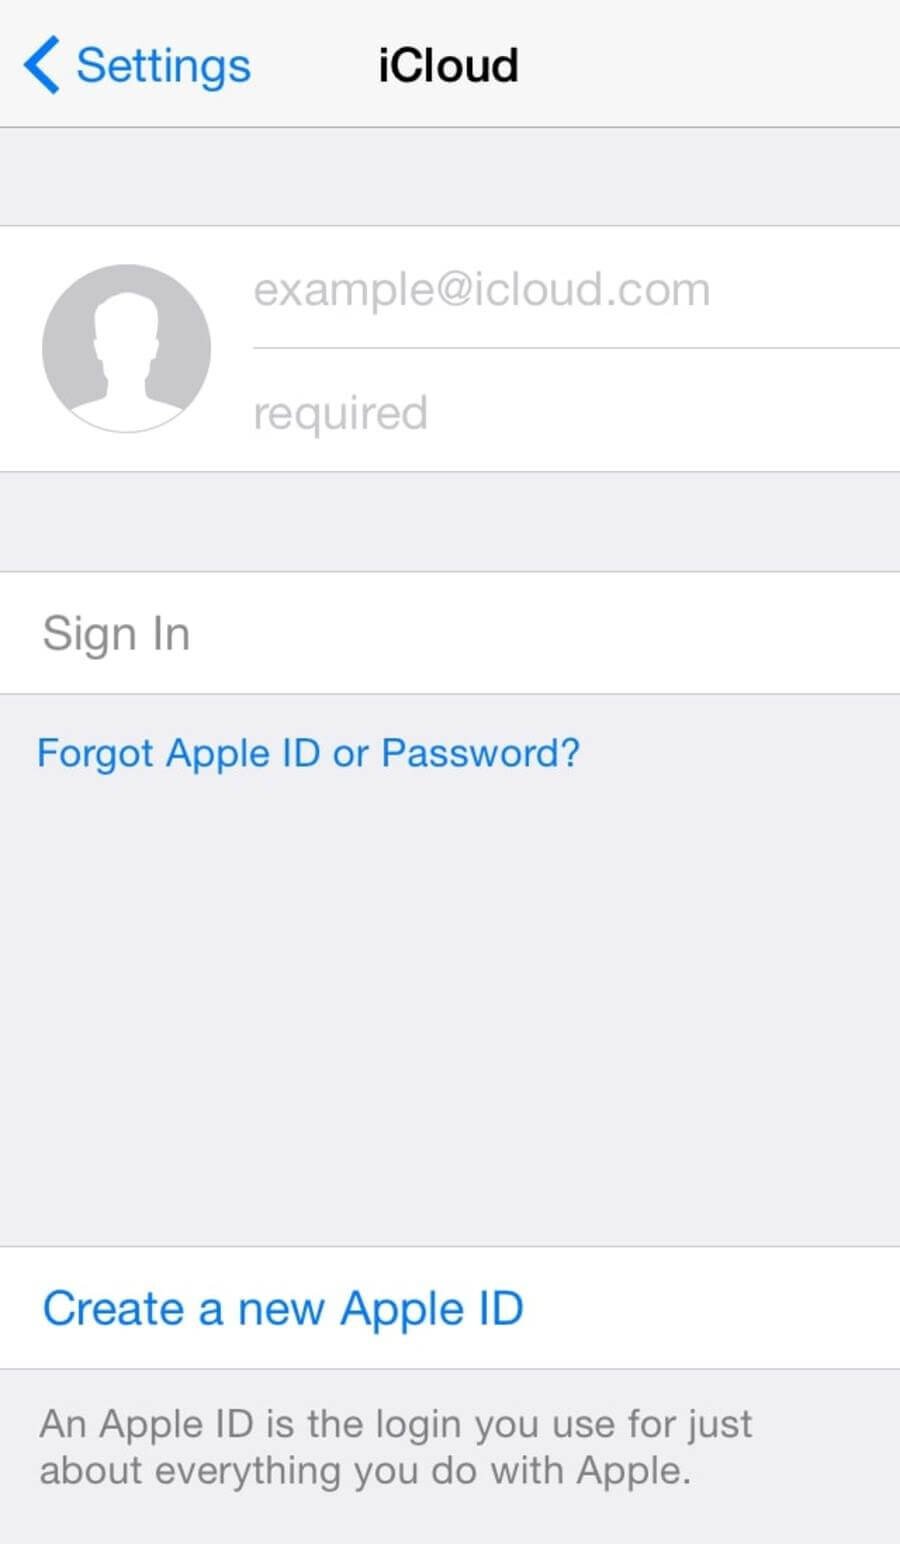 Hướng dẫn tạo tài khoản Apple ID và iCloud miễn phí không cần thẻ Visa. - Hình 15